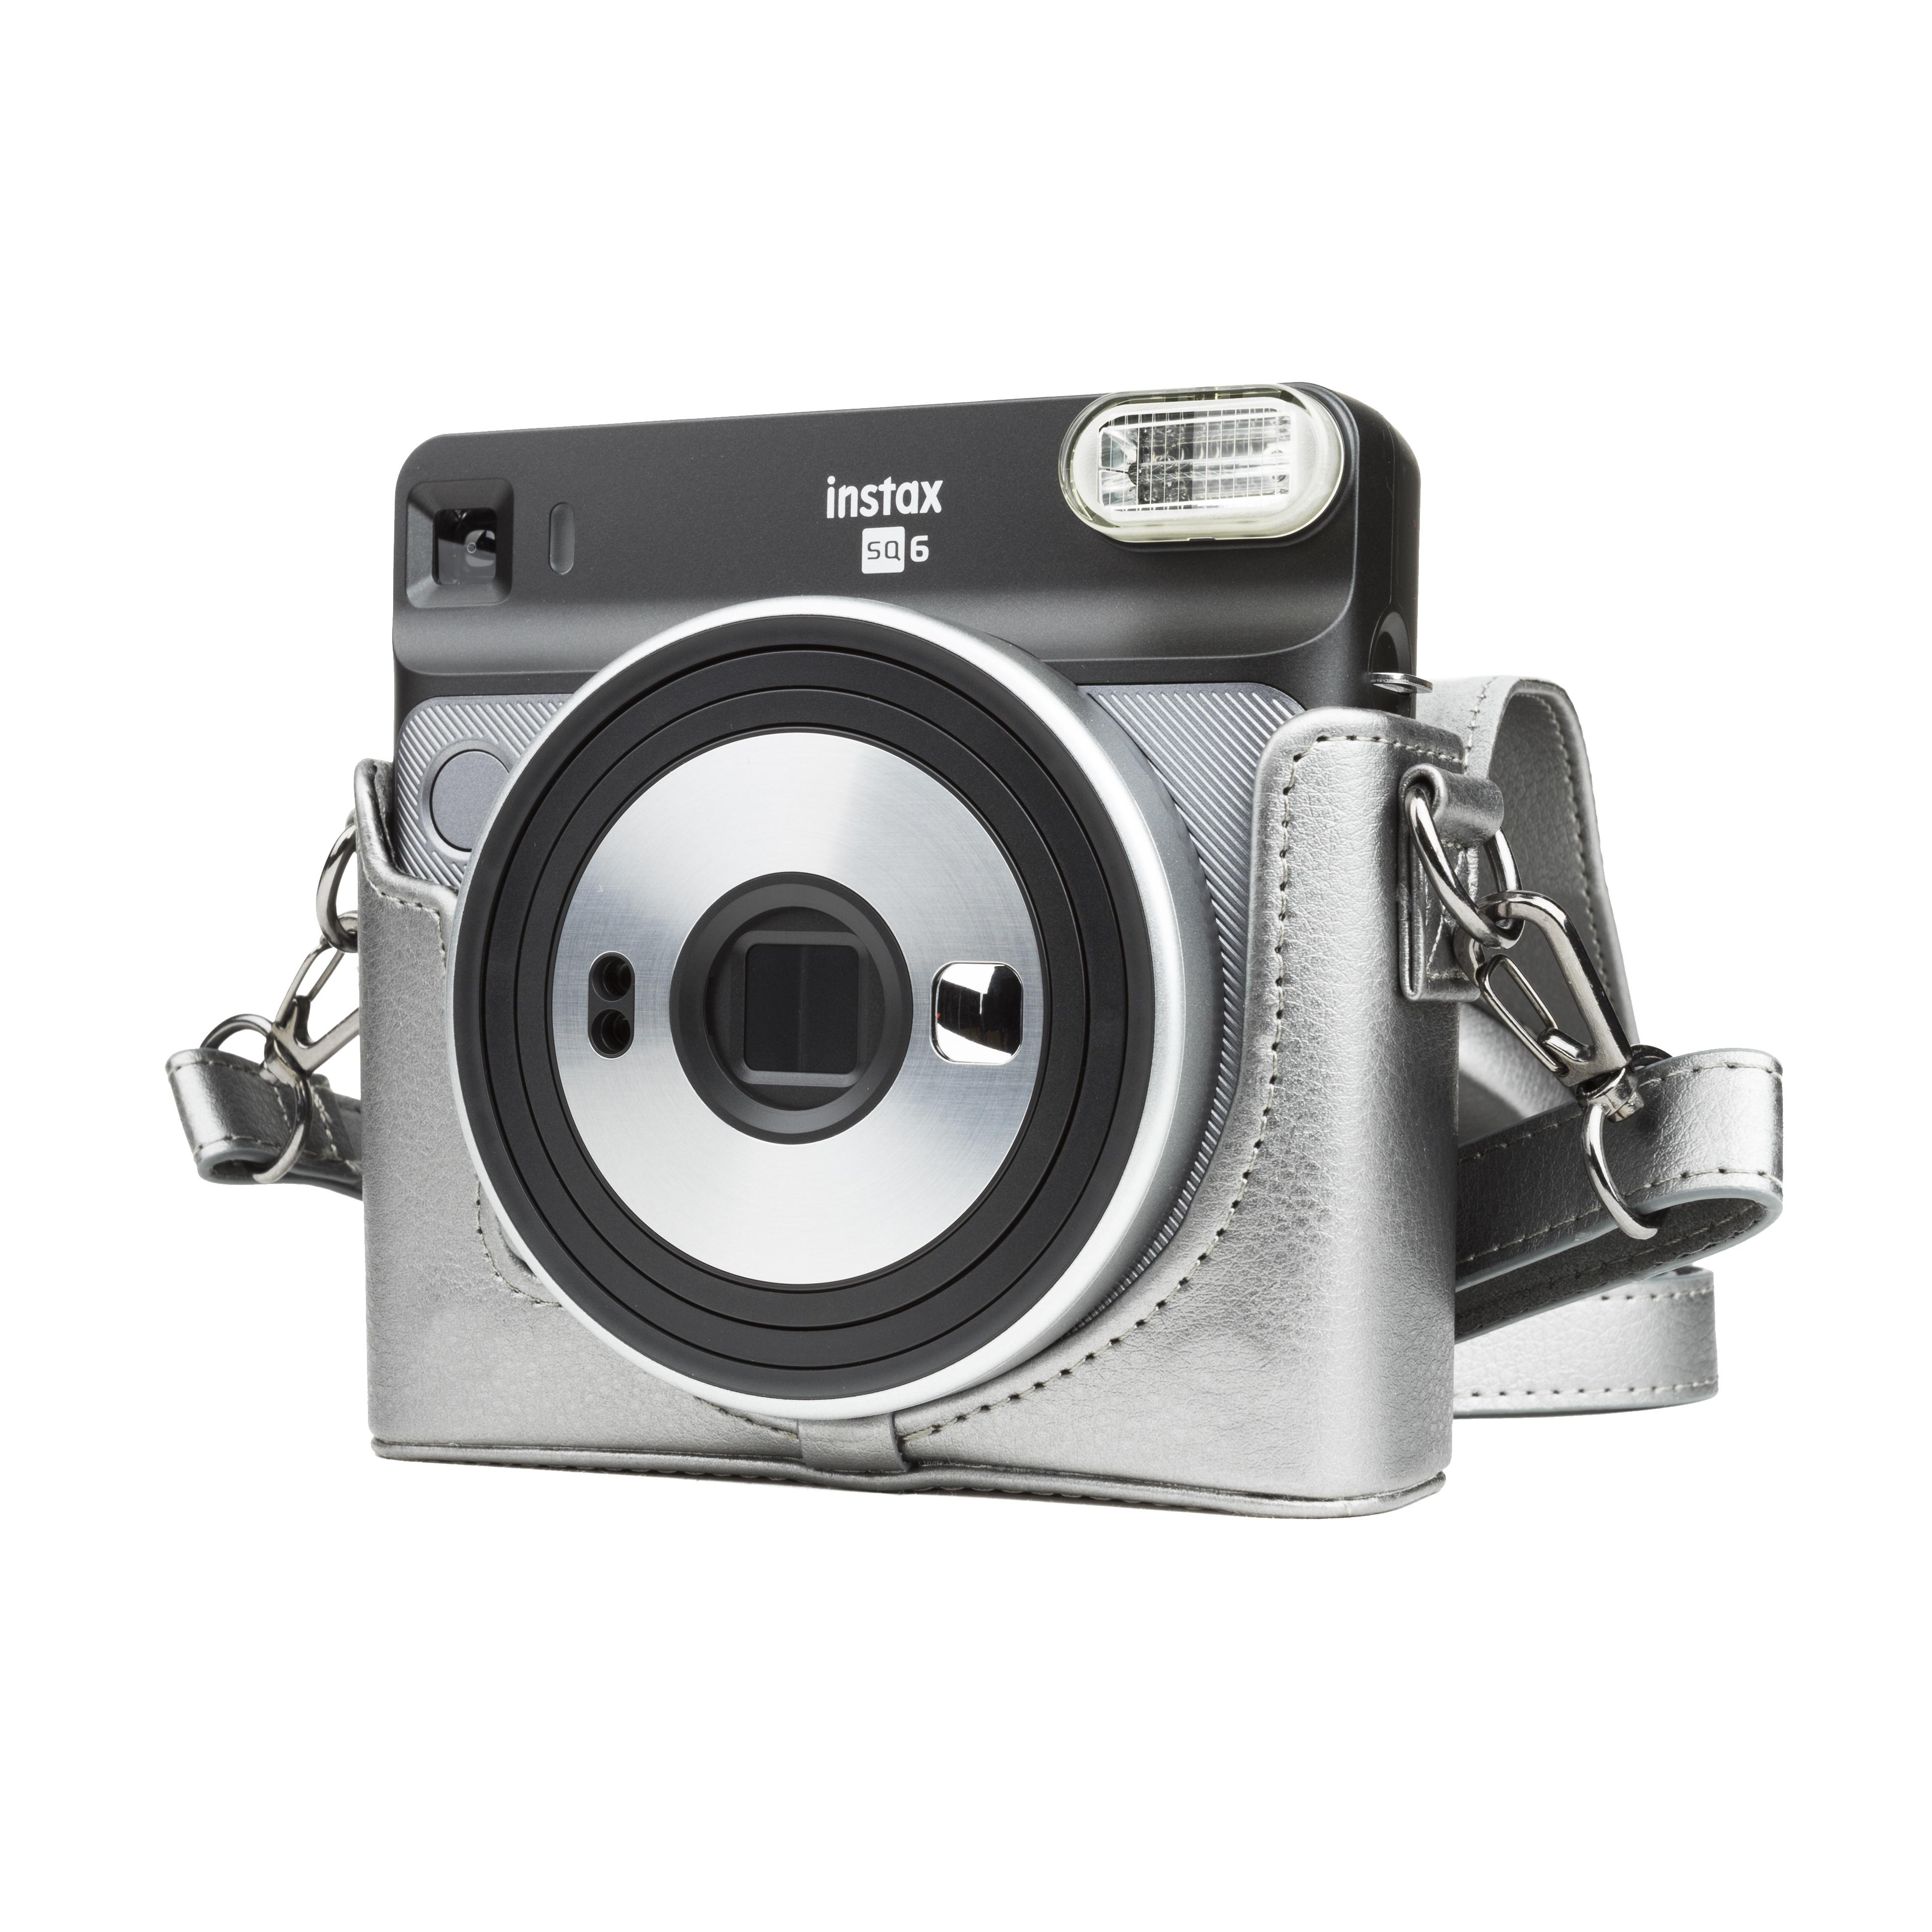 Fuji Instax Square SQ6 Sq 6 Instant Camera Graphite Grey Grey Case | eBay